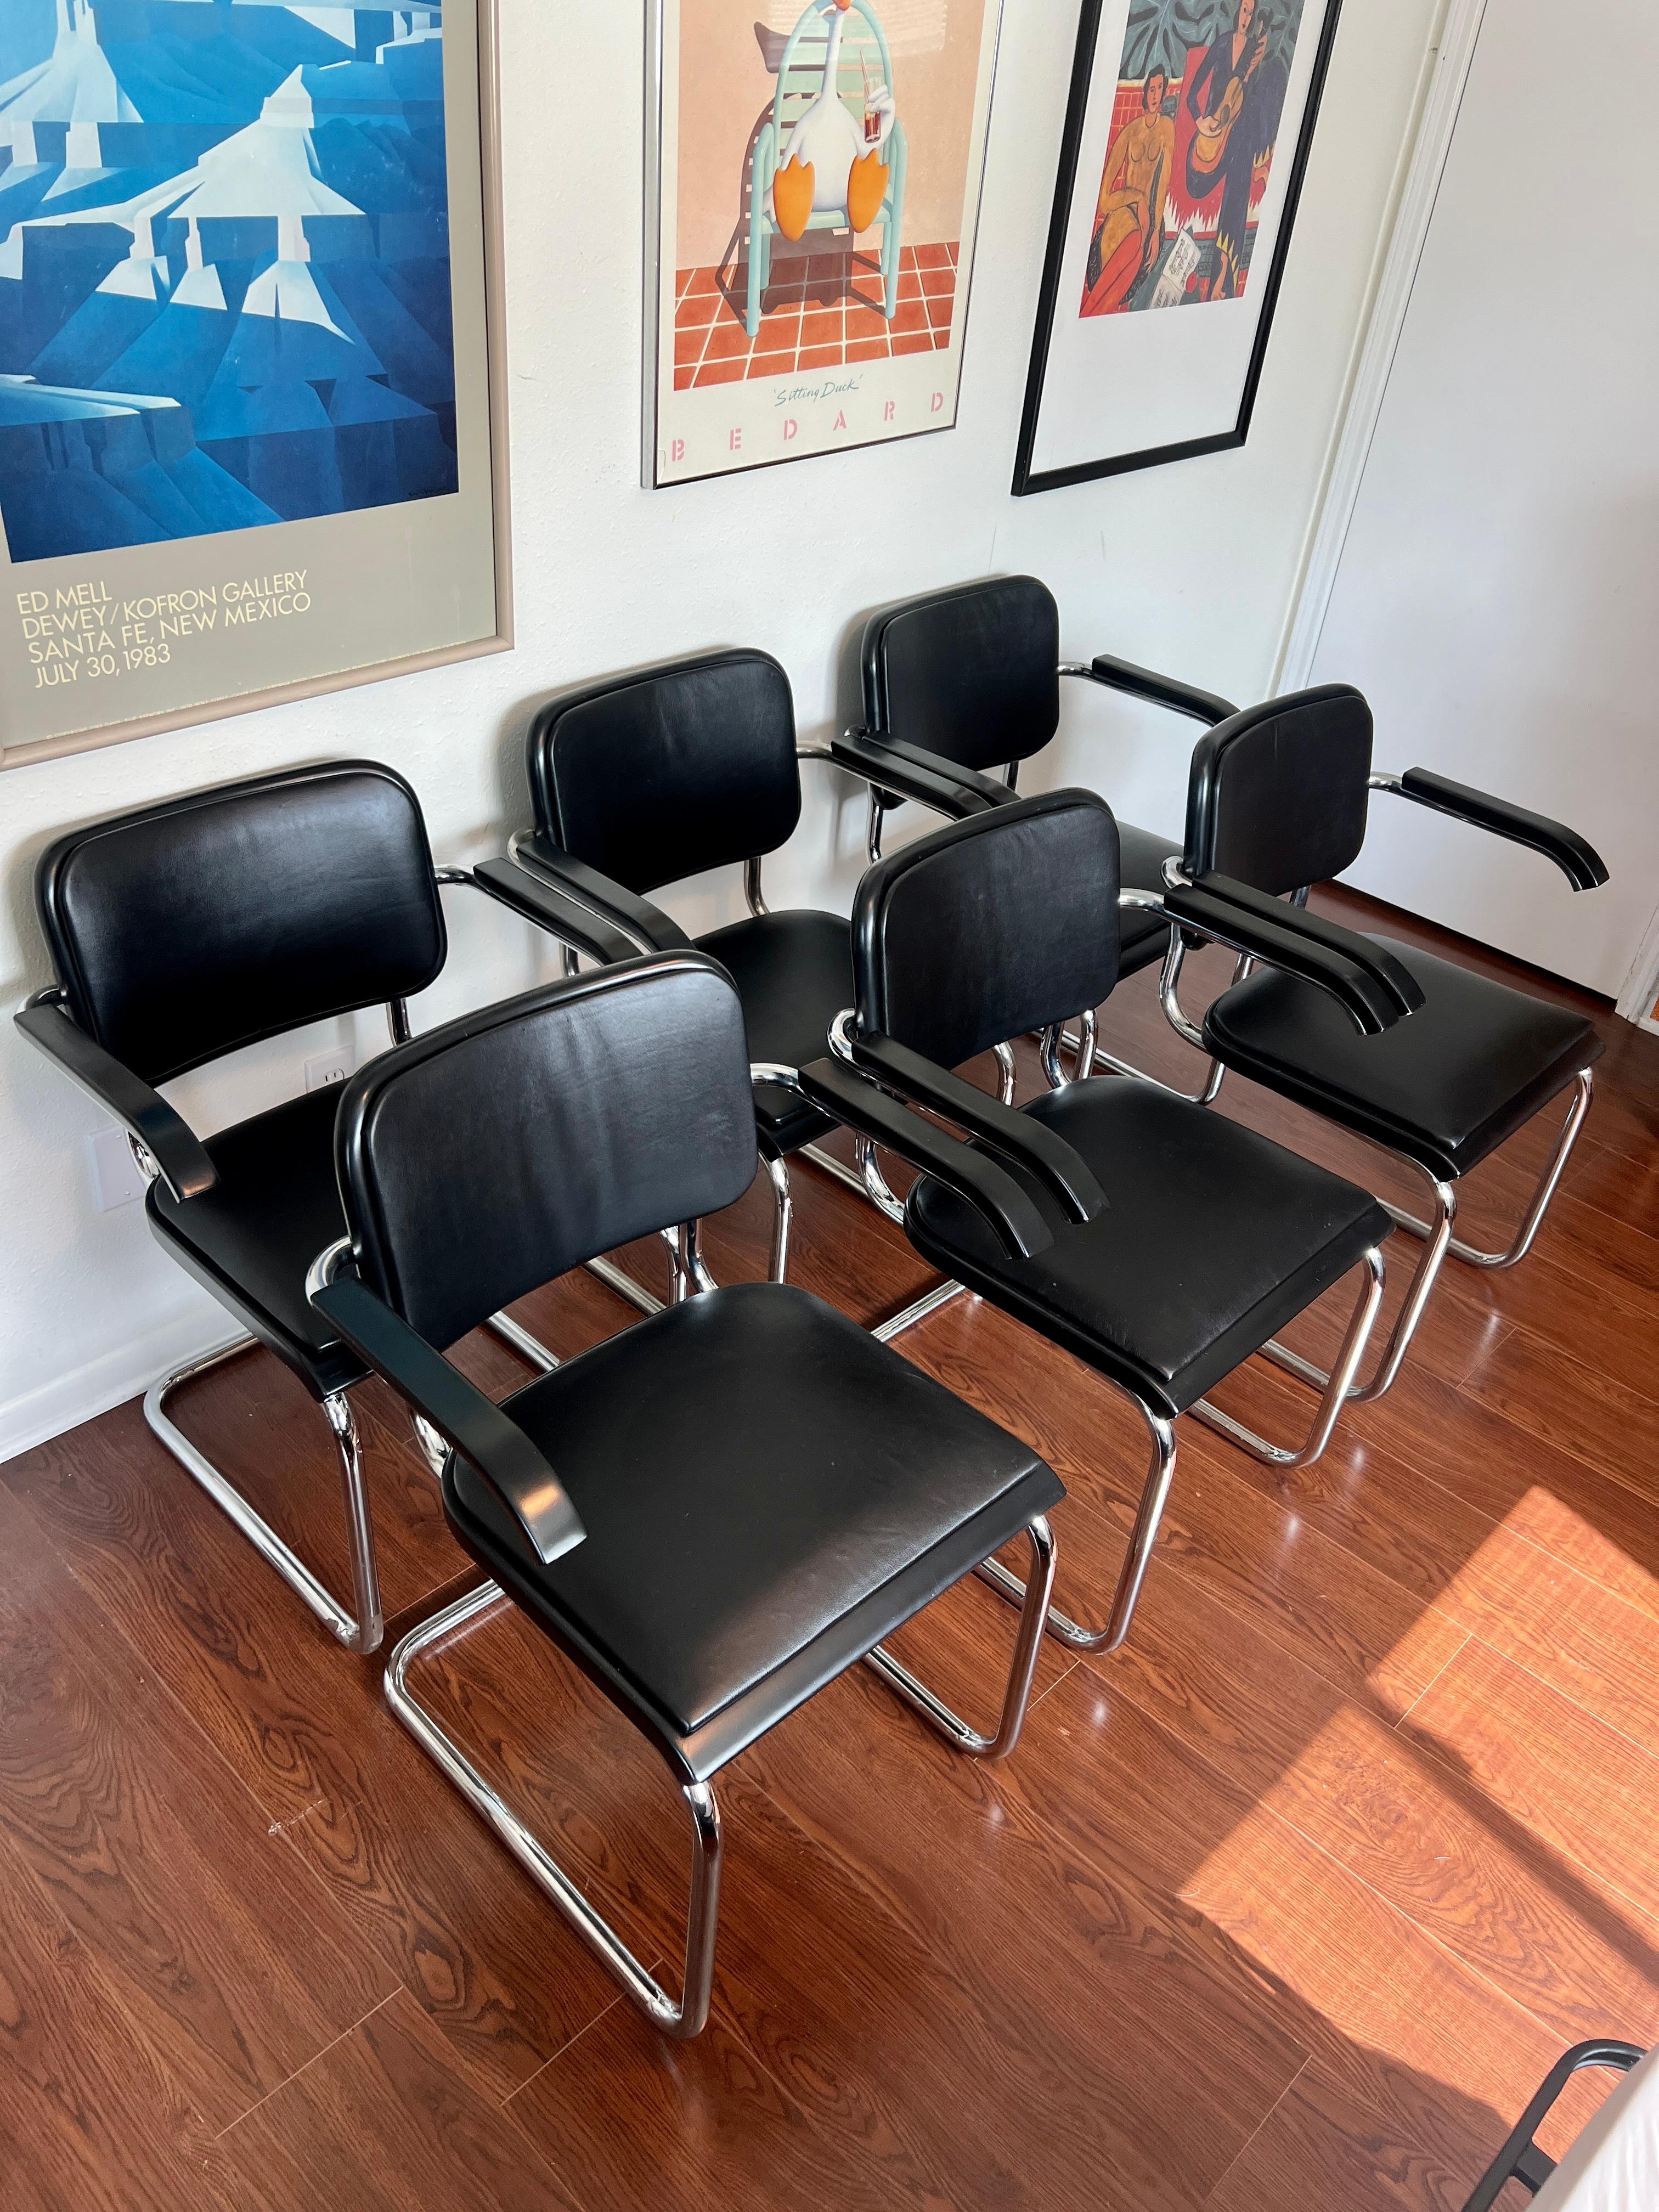 Ensemble original de 6 chaises ICONIC de Marcel Breuer pour Thonet modèle S64. Avec les étiquettes originales de l'immeuble Enron vers 1986. Une partie de l'histoire de Houston. Nouvellement recouvert d'un cuir de vachette noir de première qualité